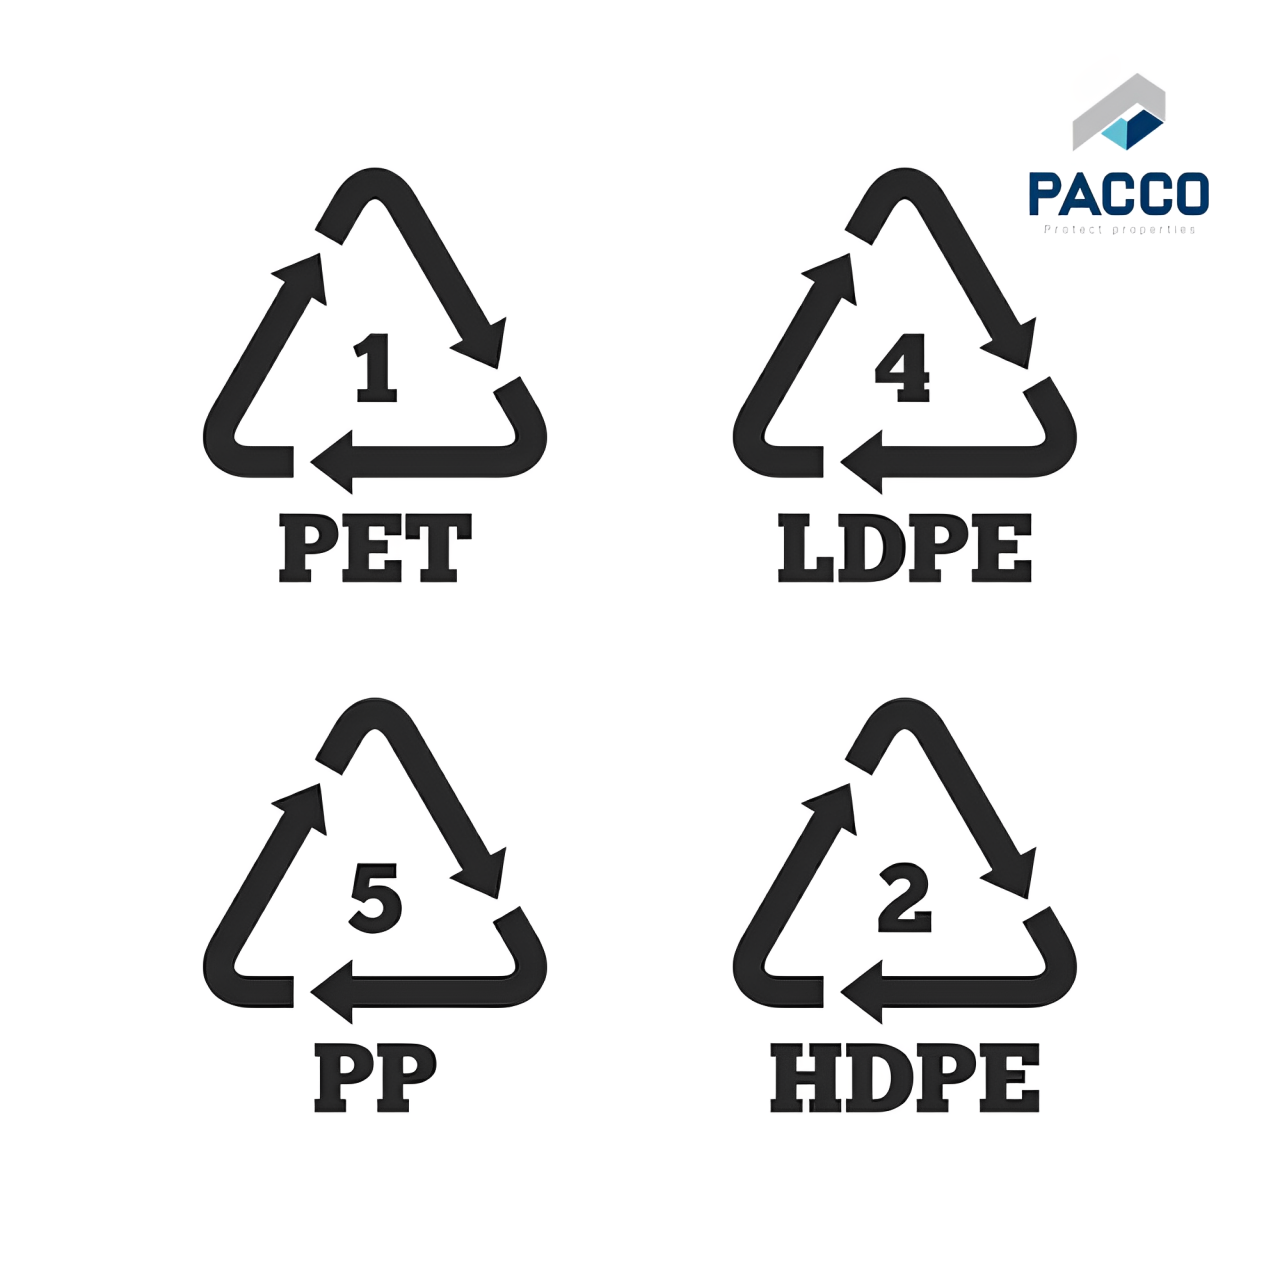 Nhựa PP và PE đều là nhựa nhiệt dẻo nên có thể tái chế thông qua quá trình gia nhiệt